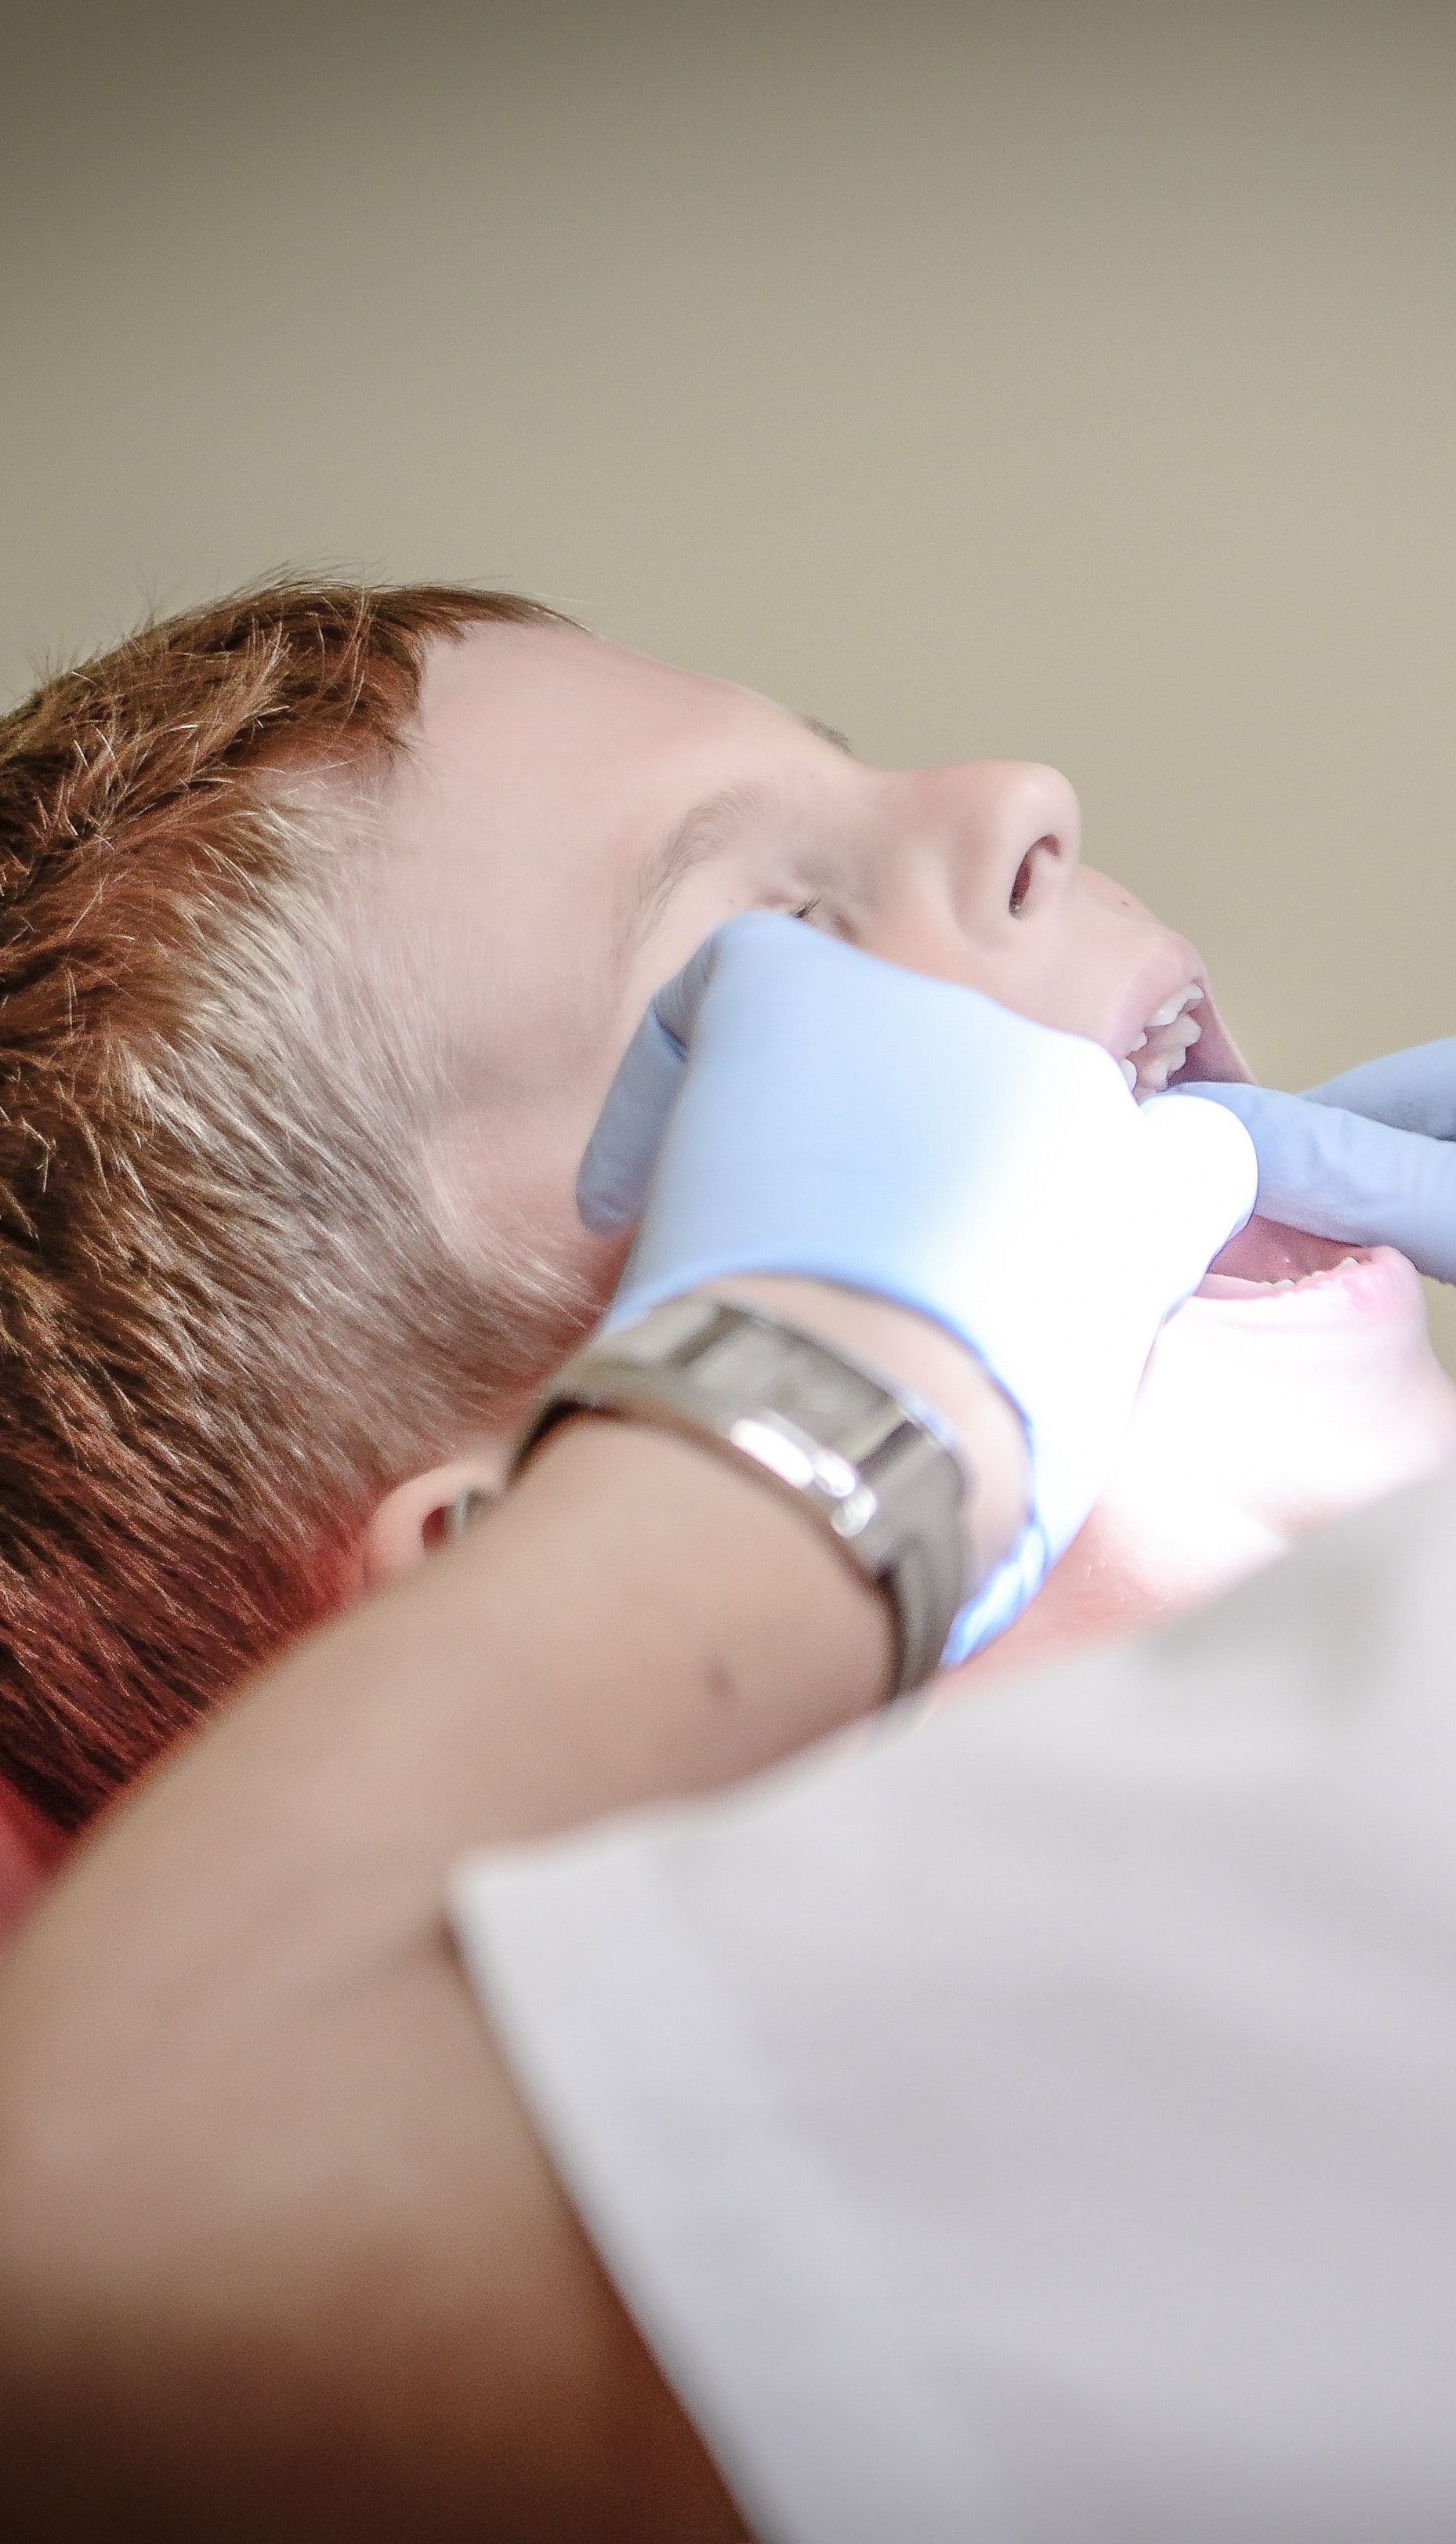 Досвід ТСН: Пастеризоване молоко може врятувати вибитий зуб, а медики закріплять його на місце